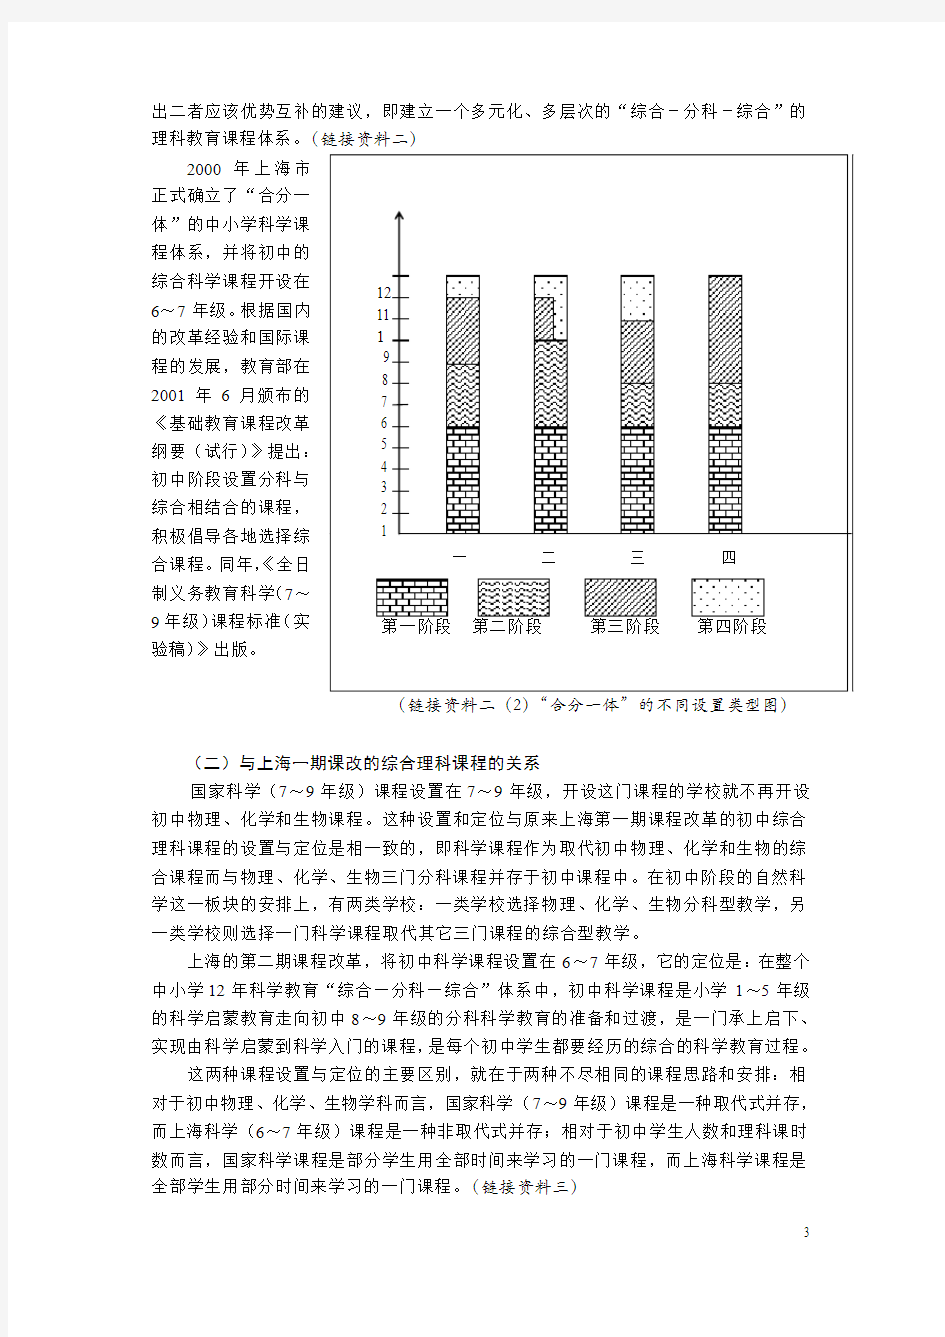 上海市初中科学课程标准(试行稿)说明